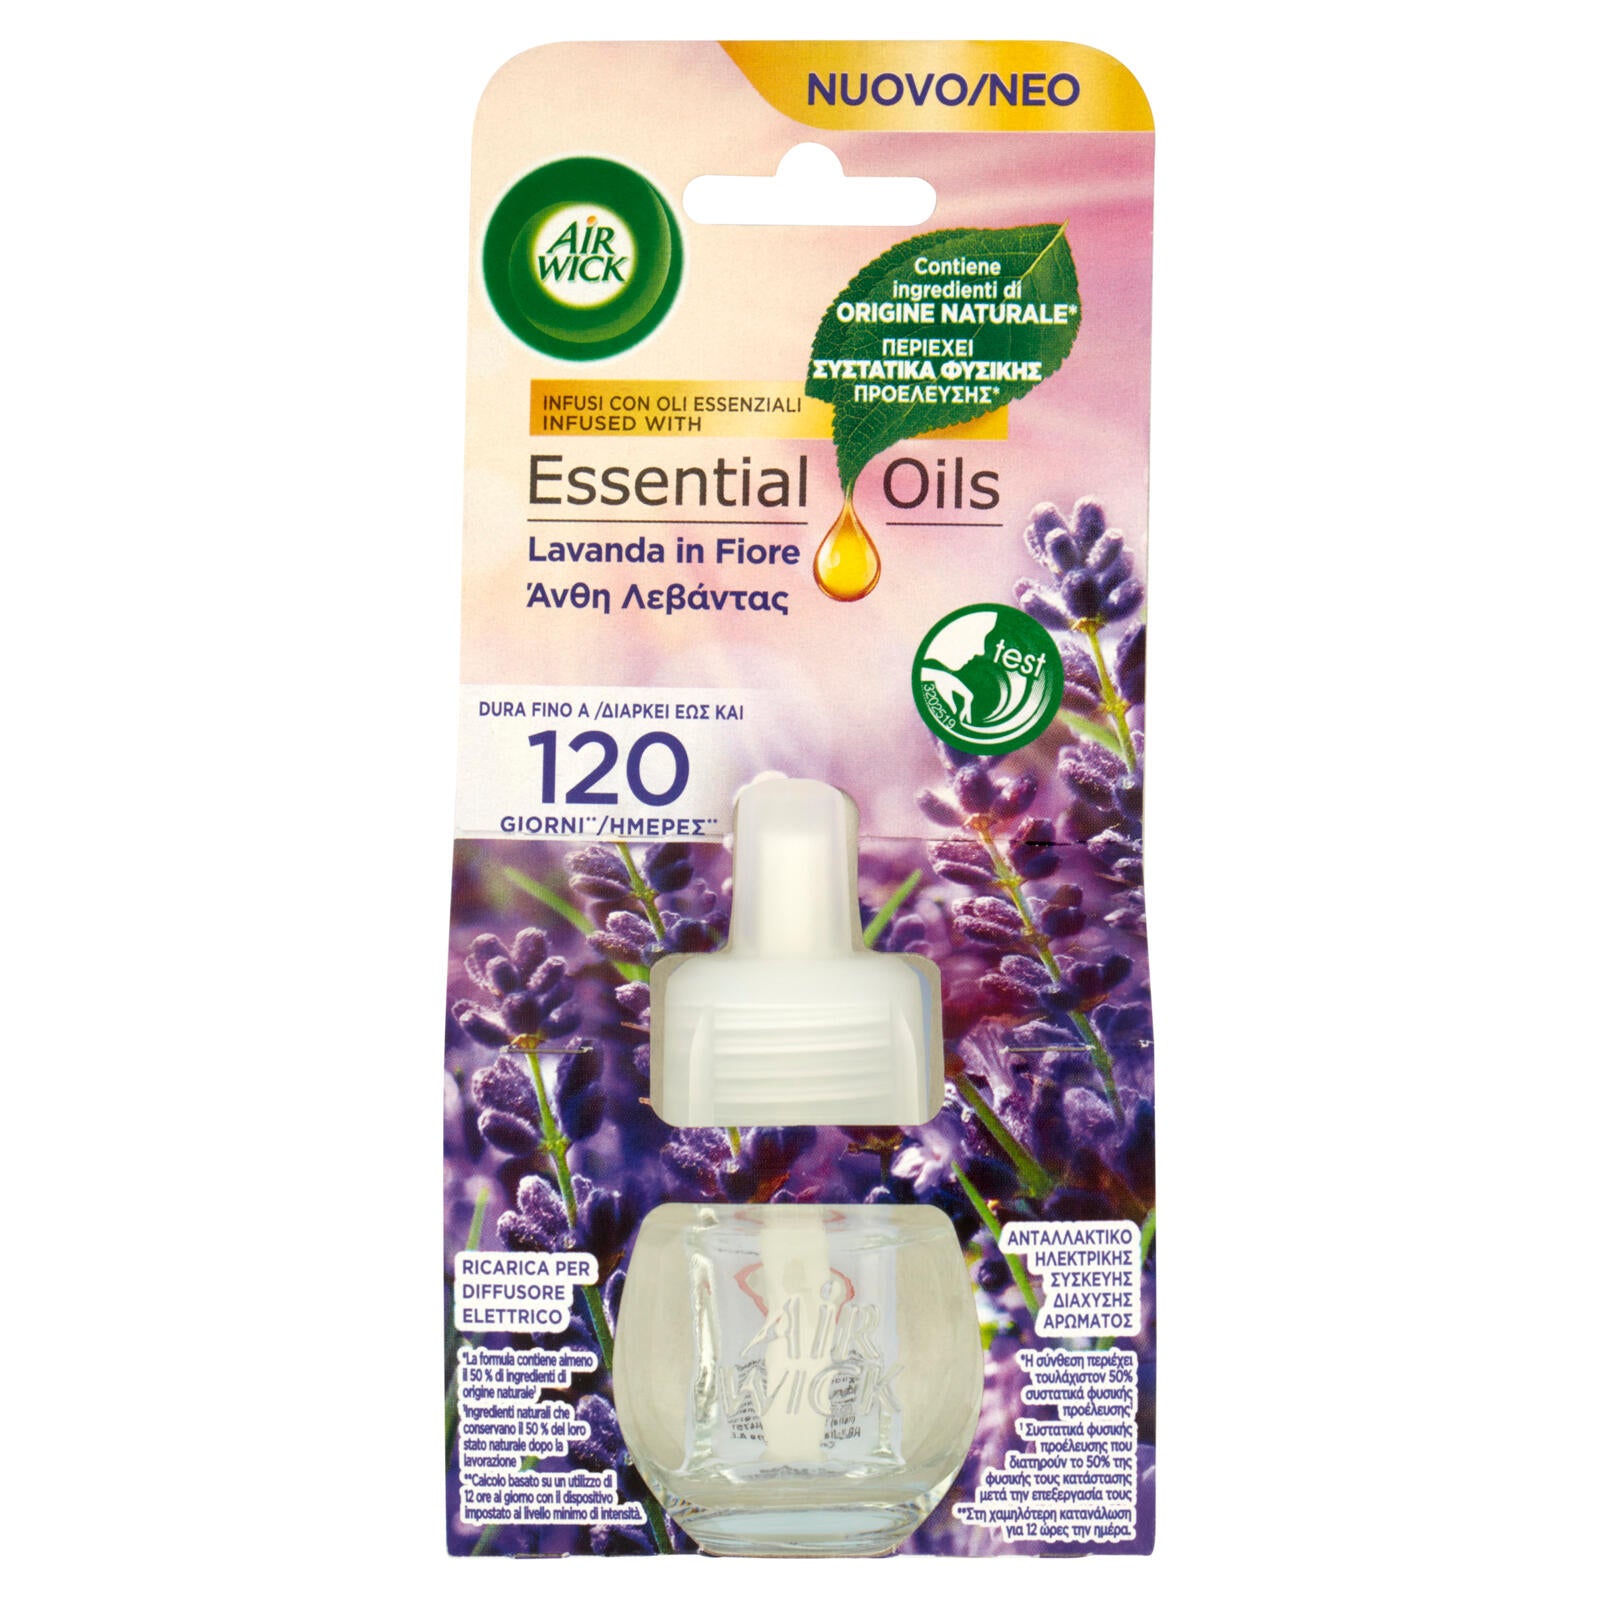 Air Wick - Ricarica deodorante per ambienti elettrico plug-in - Magnolia e  fiori di ciliegio